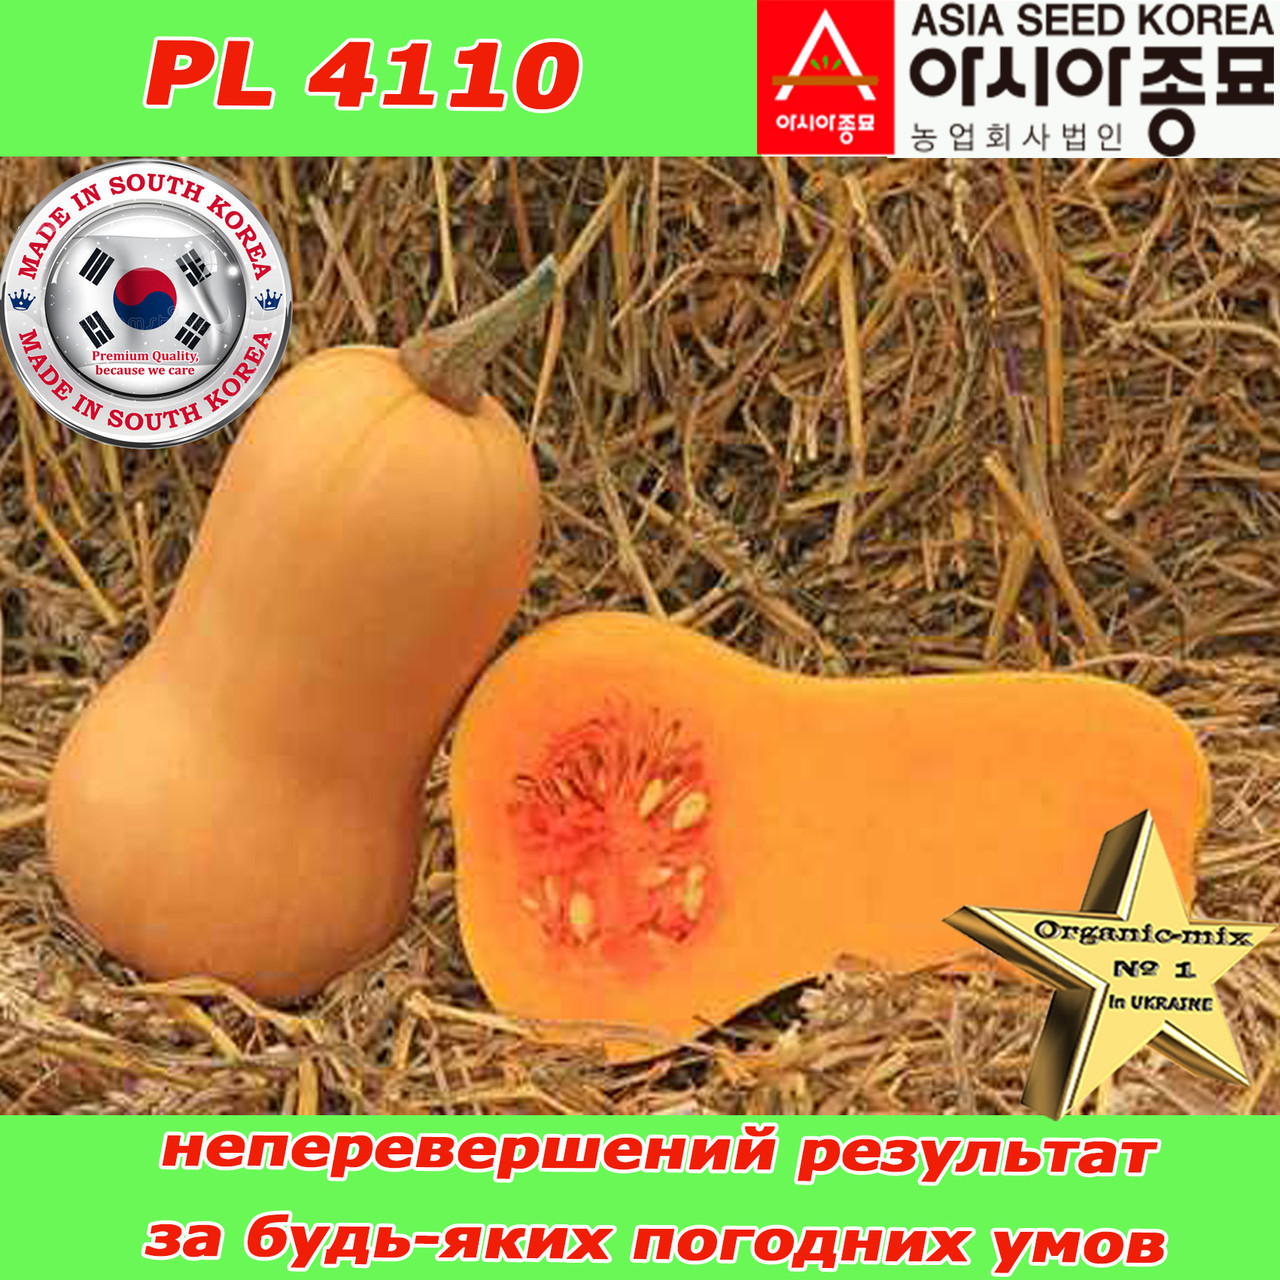 Гарбуз надрожайний, тип Батернат, PL 4110 F1 (500 насіння, проф.пакет), Південна Корея, ТМ Asia Seed